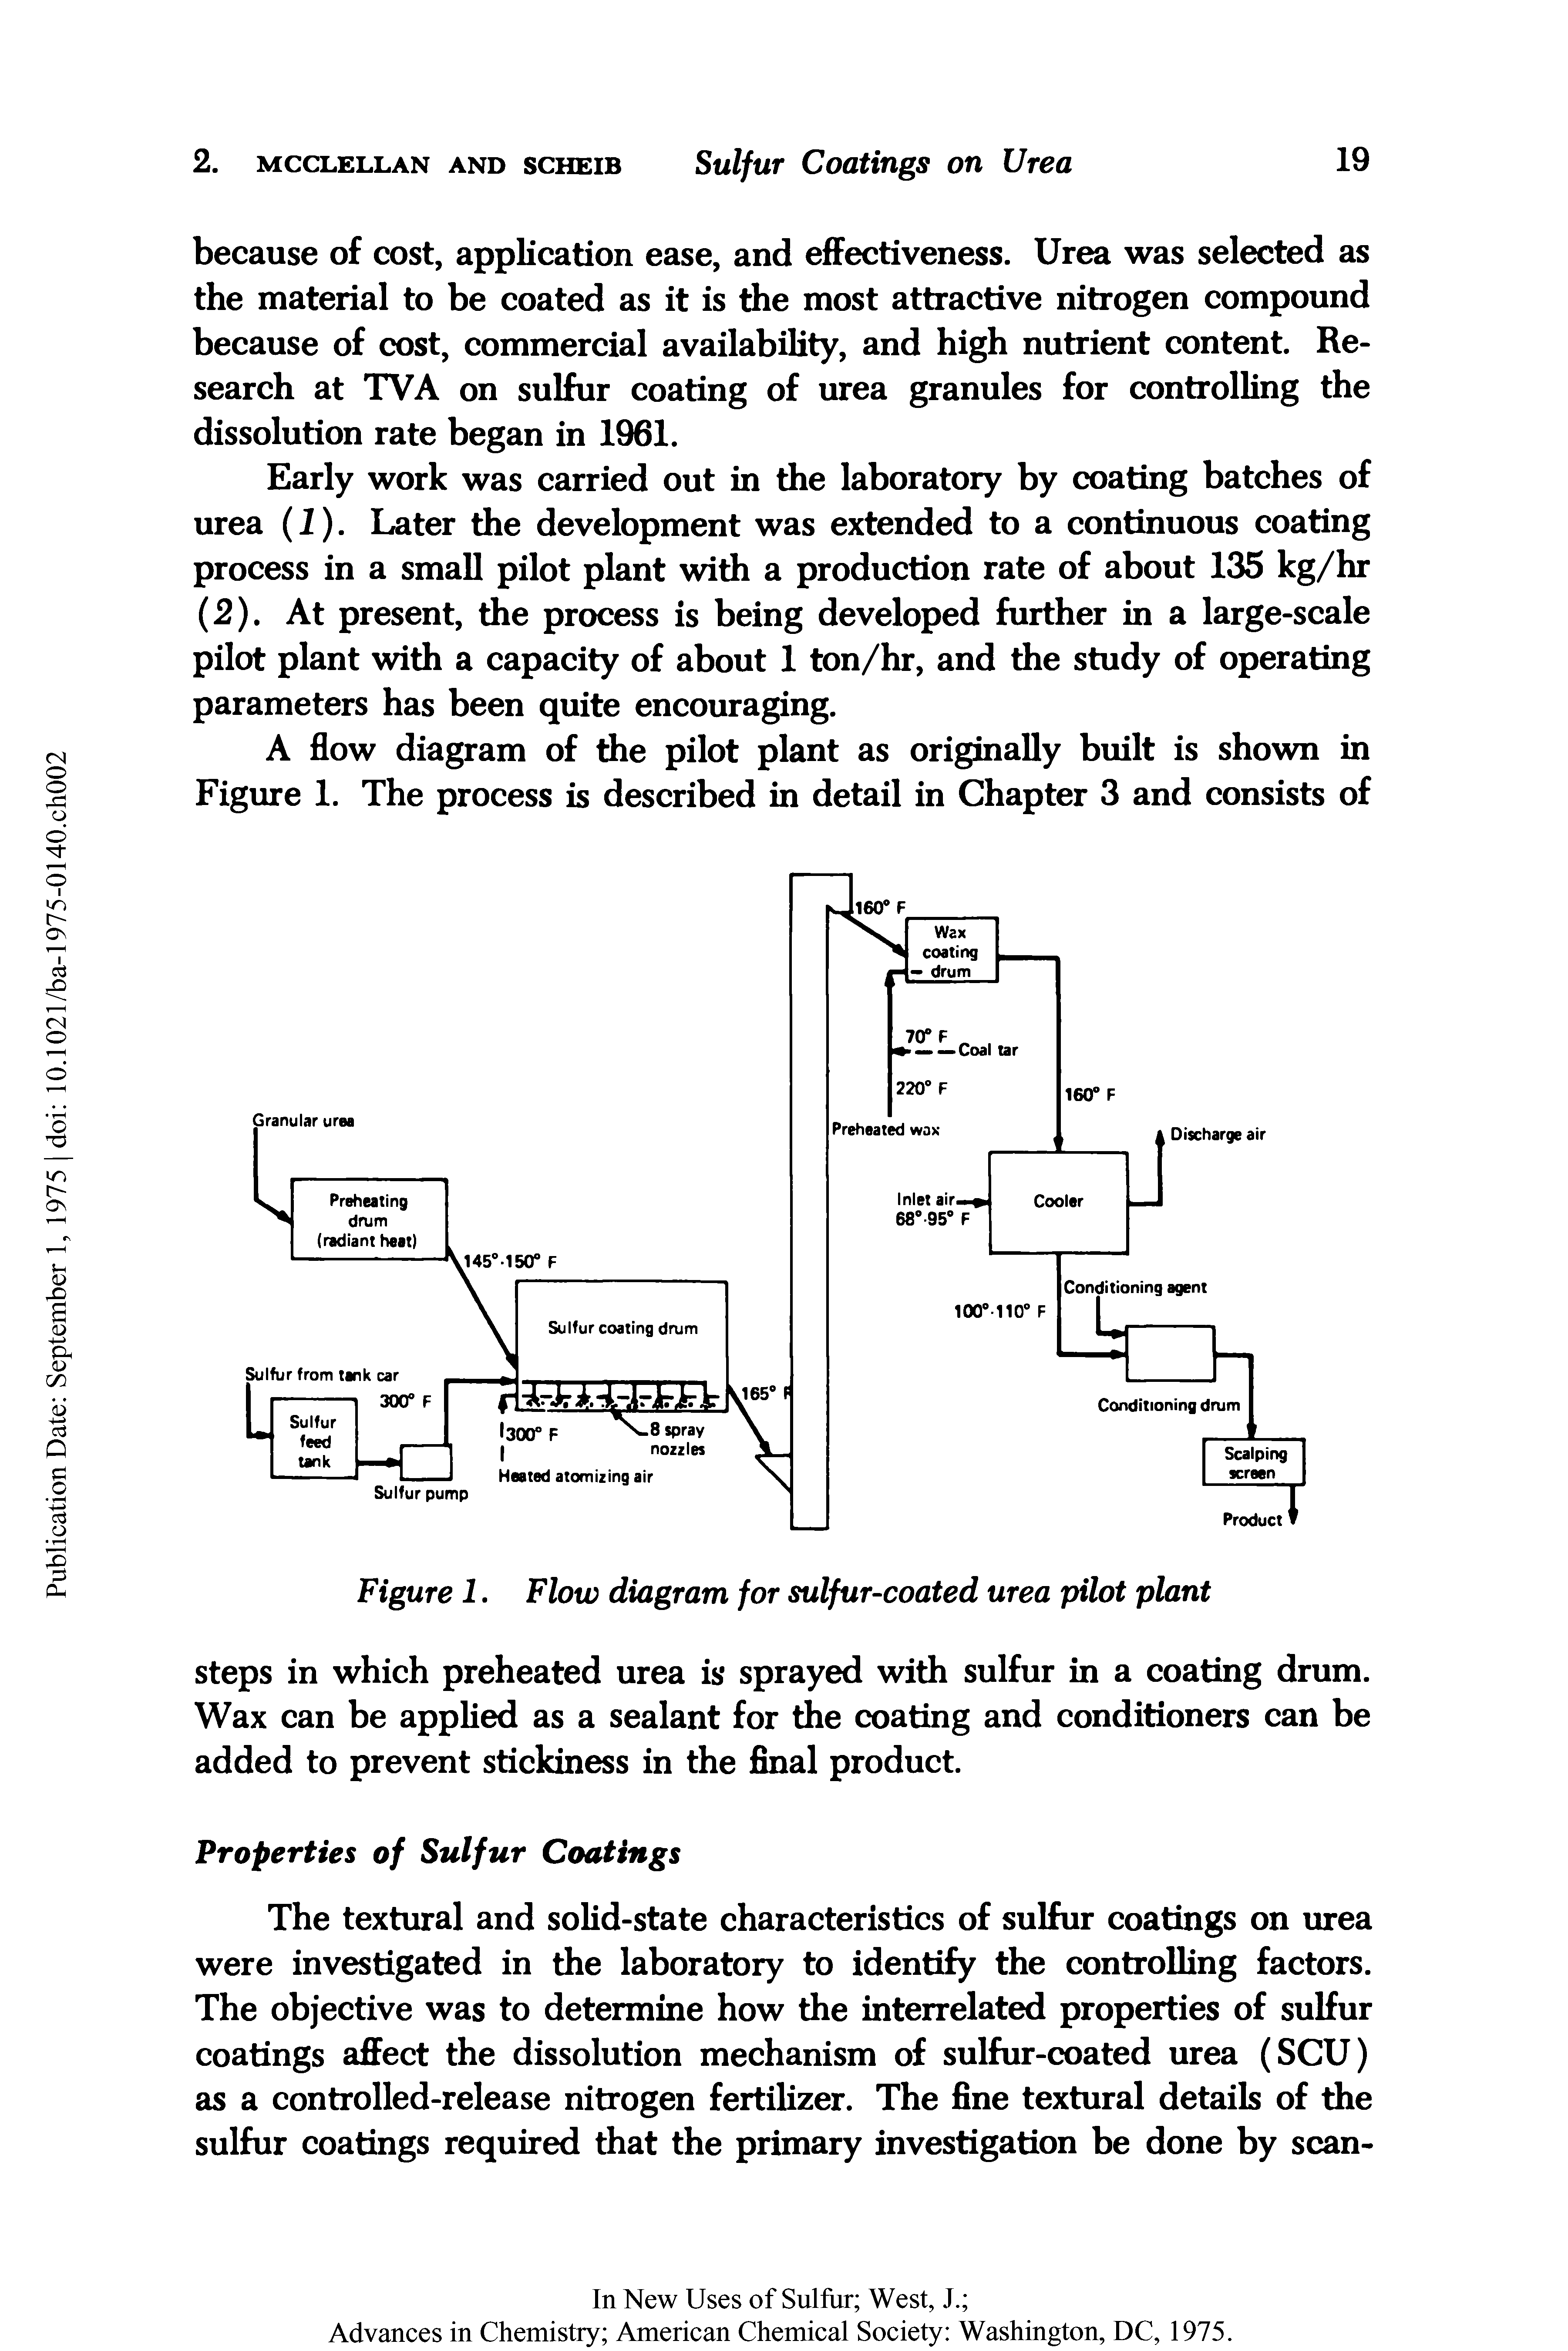 Figure 1. Flow diagram for sulfur-coated urea pilot plant...